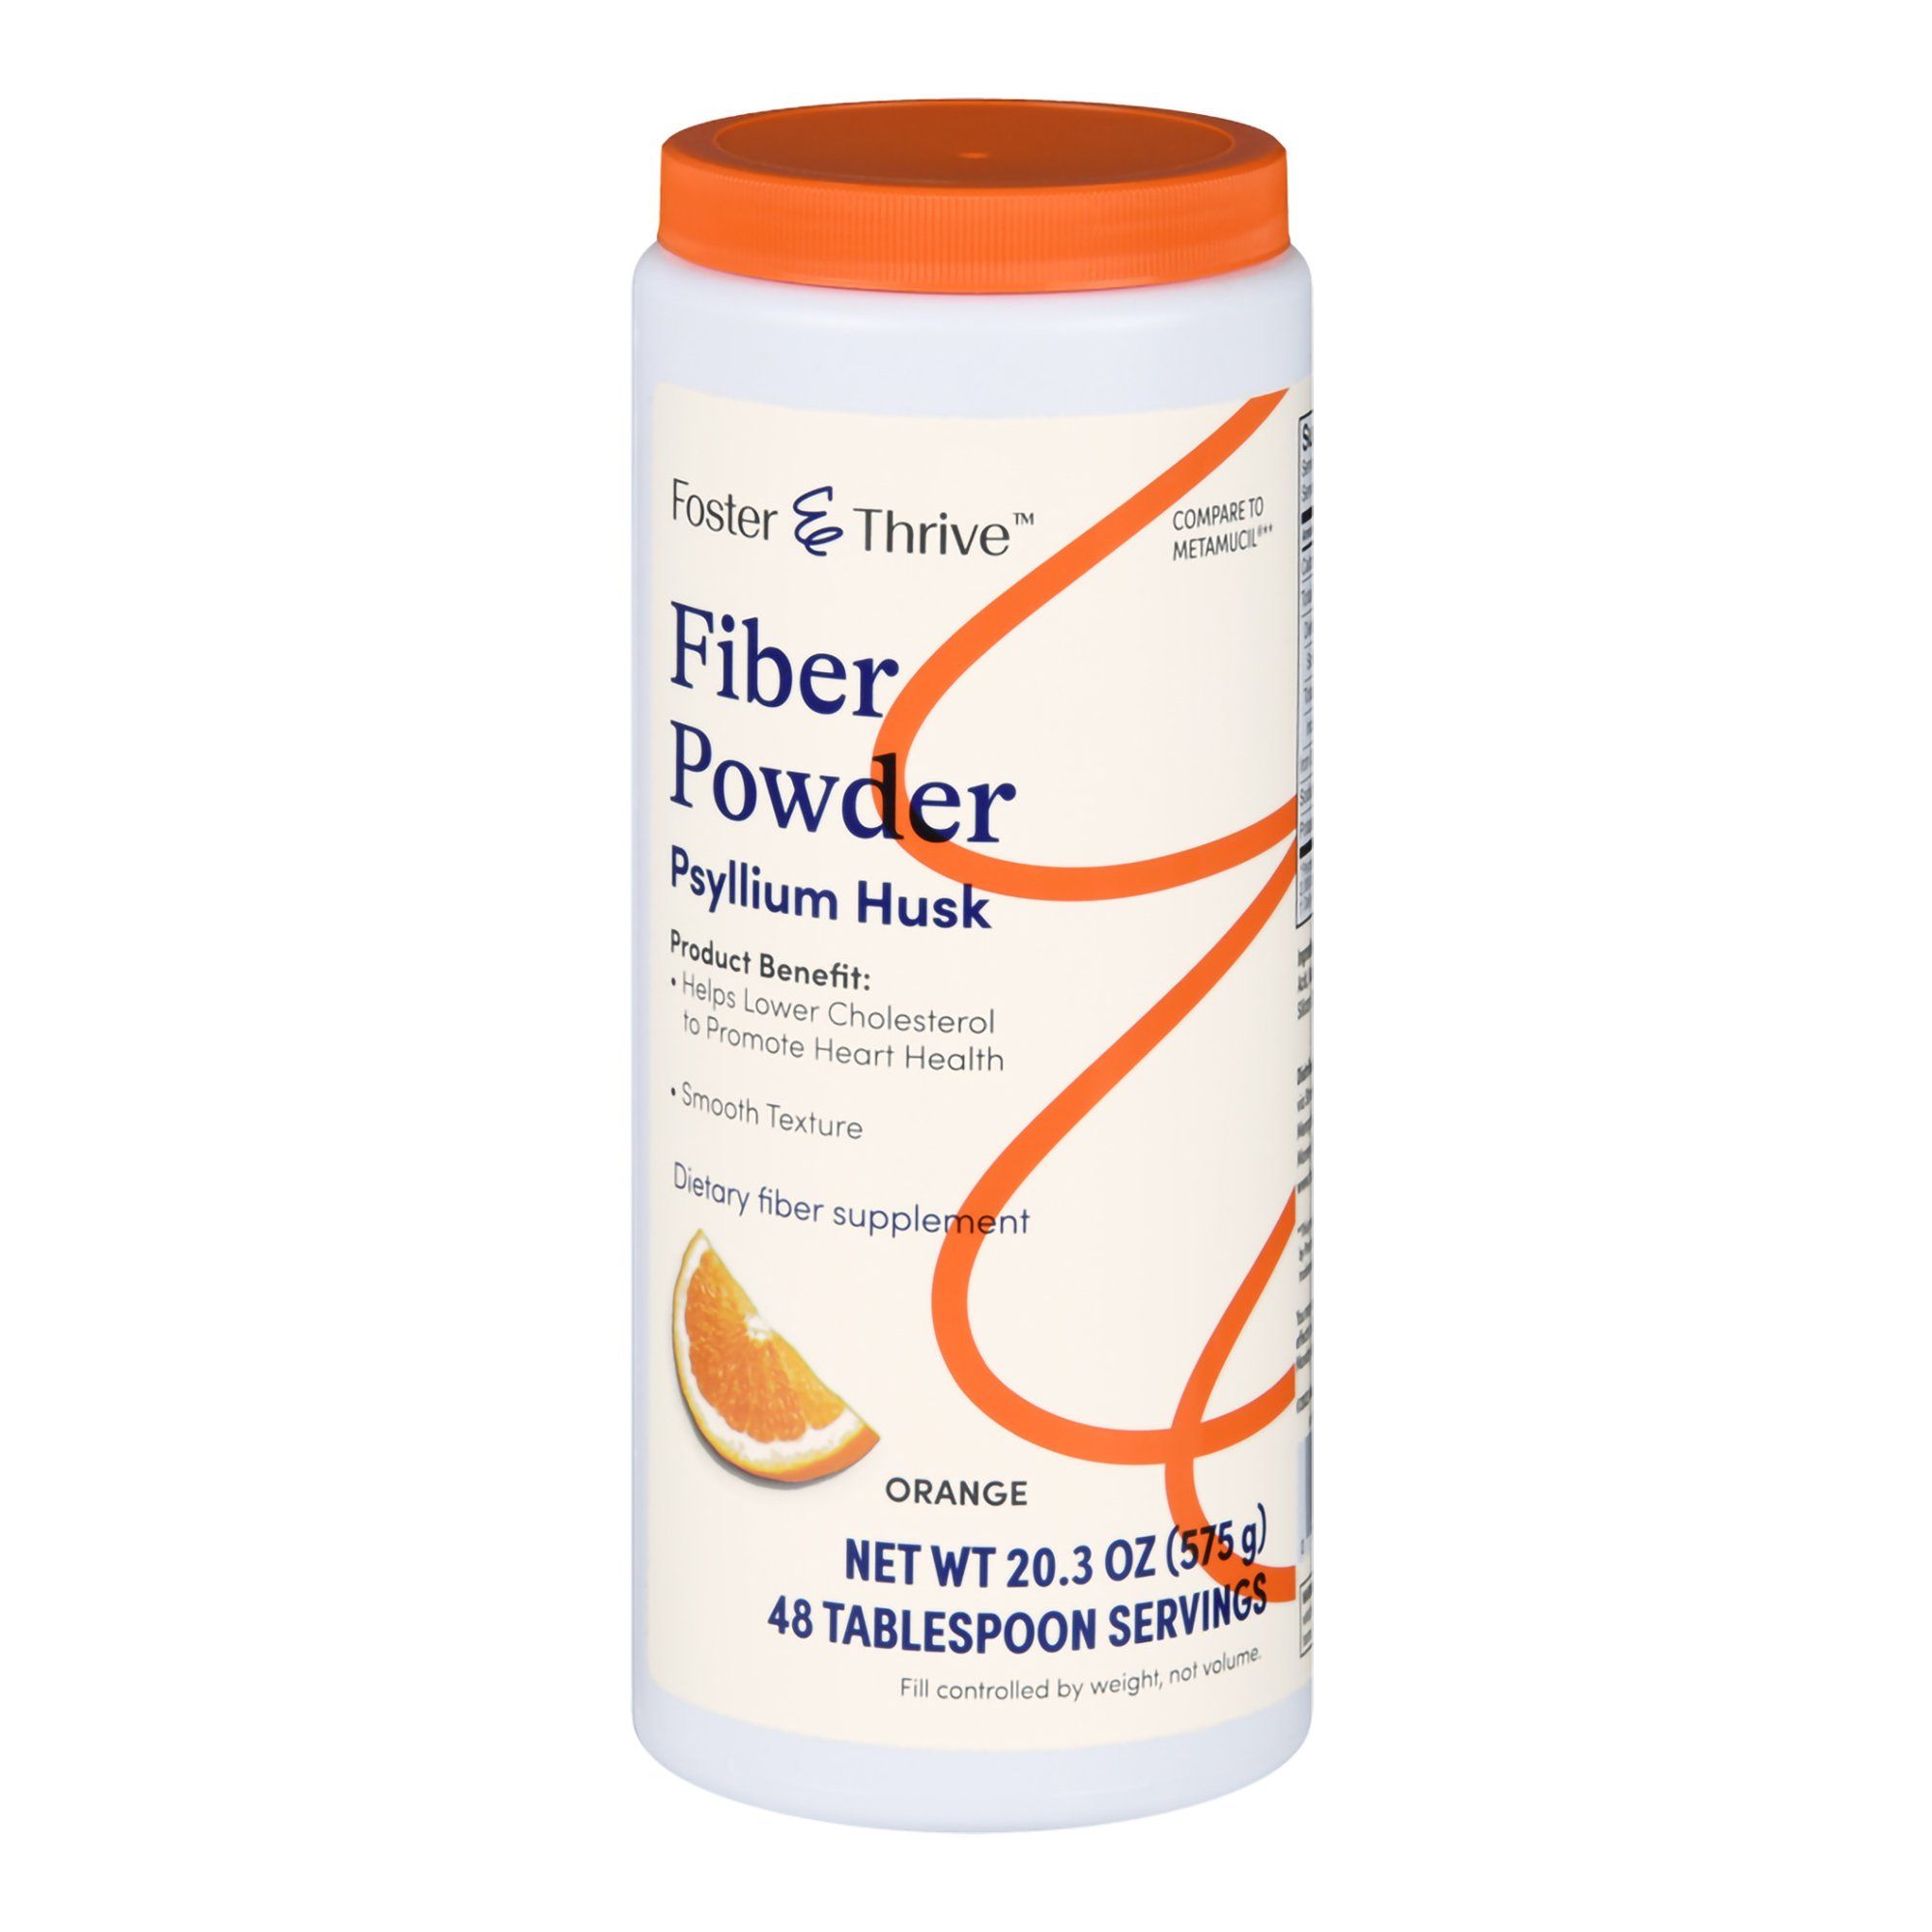 Foster & Thrive Fiber Powder, Smooth Texture, Orange - 20.3 oz